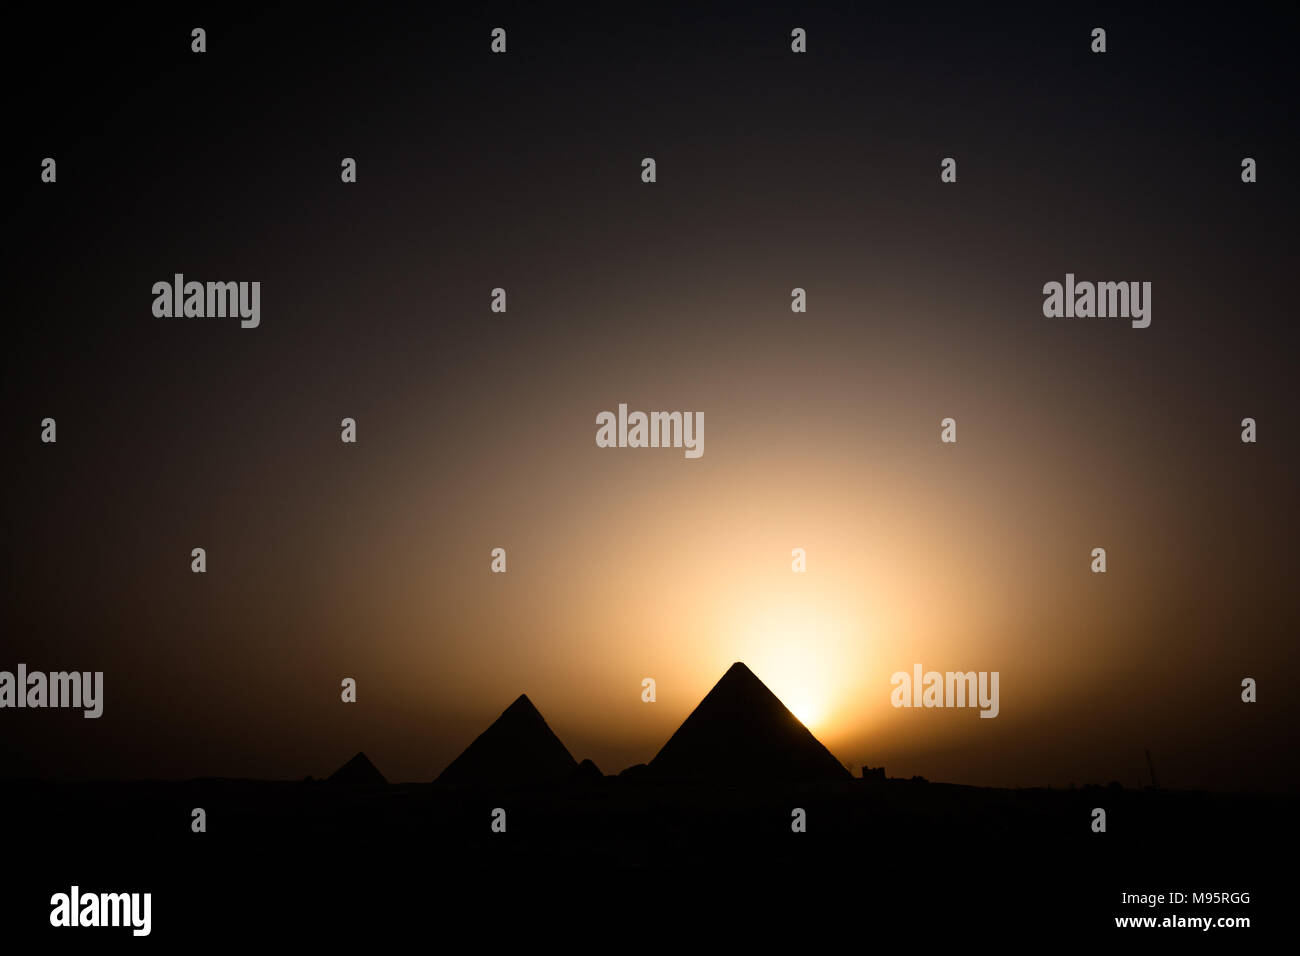 El sol ha caído por detrás de la Gran Pirámide lanzando un majestuoso aura de luz en el cielo junto una de las Siete Maravillas del Mundo, Giza, El Cairo. Foto de stock